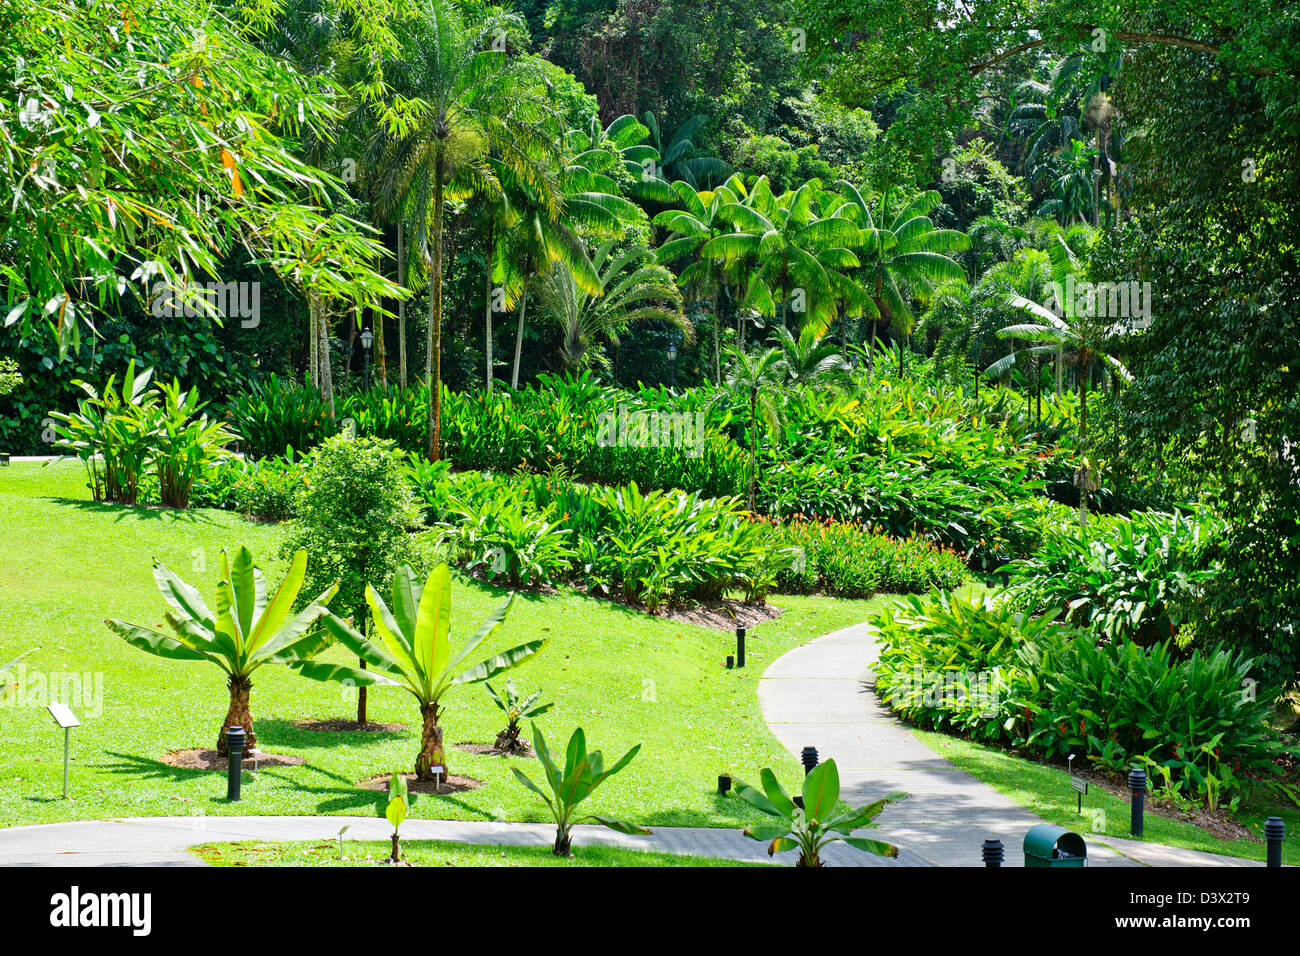 Singapore Giardino Botanico1 grado Nth dell'equatore ha 10.000 specie di piante e i mondi più grande collezione di orchidee Foto Stock